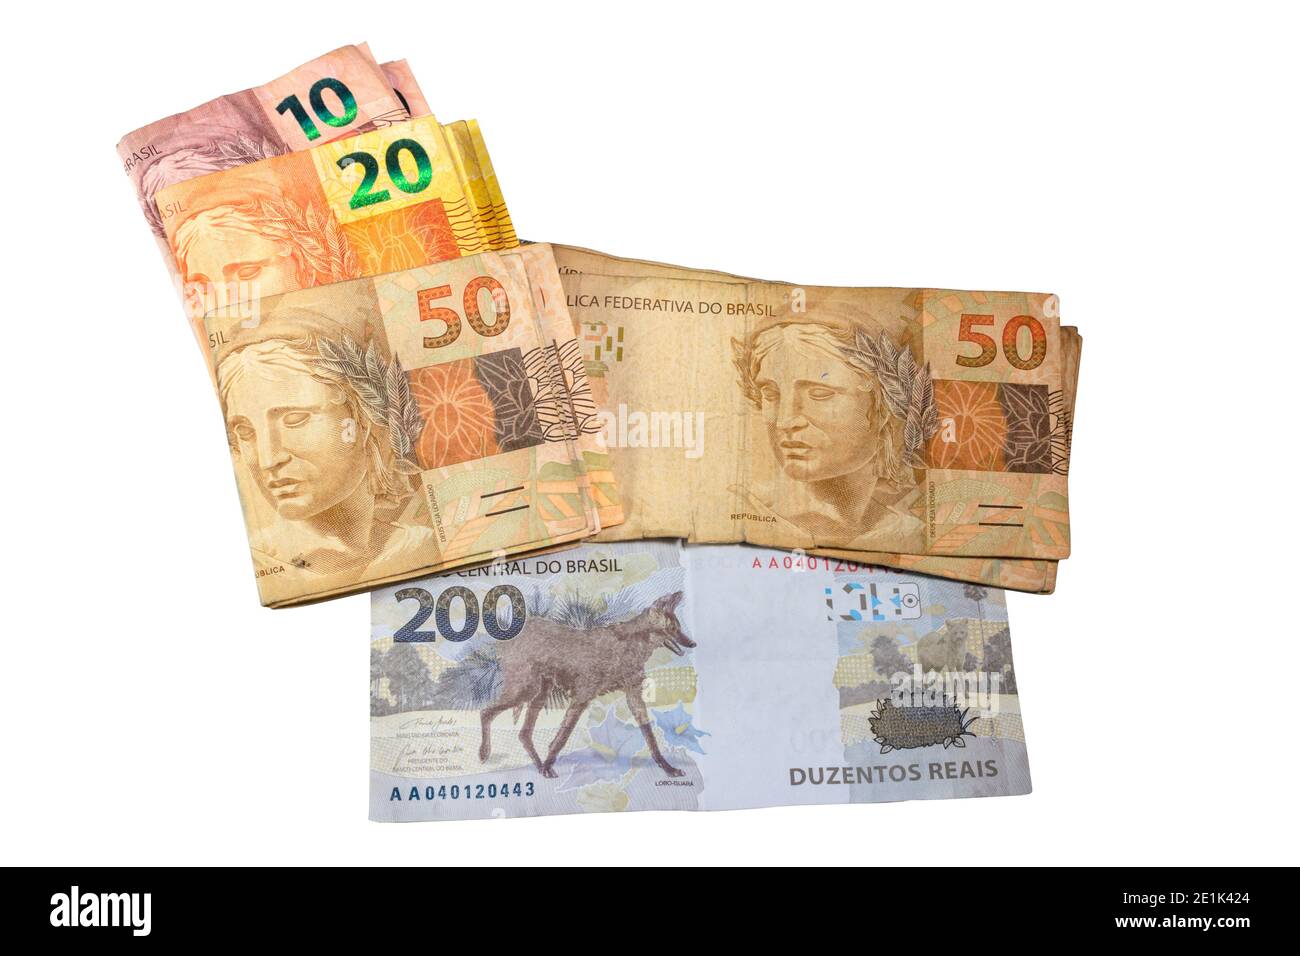 Facture monétaire brésilienne. Deux cents projets de loi, dix, vingt et cinquante projets de loi réels. Vue de dessus Banque D'Images